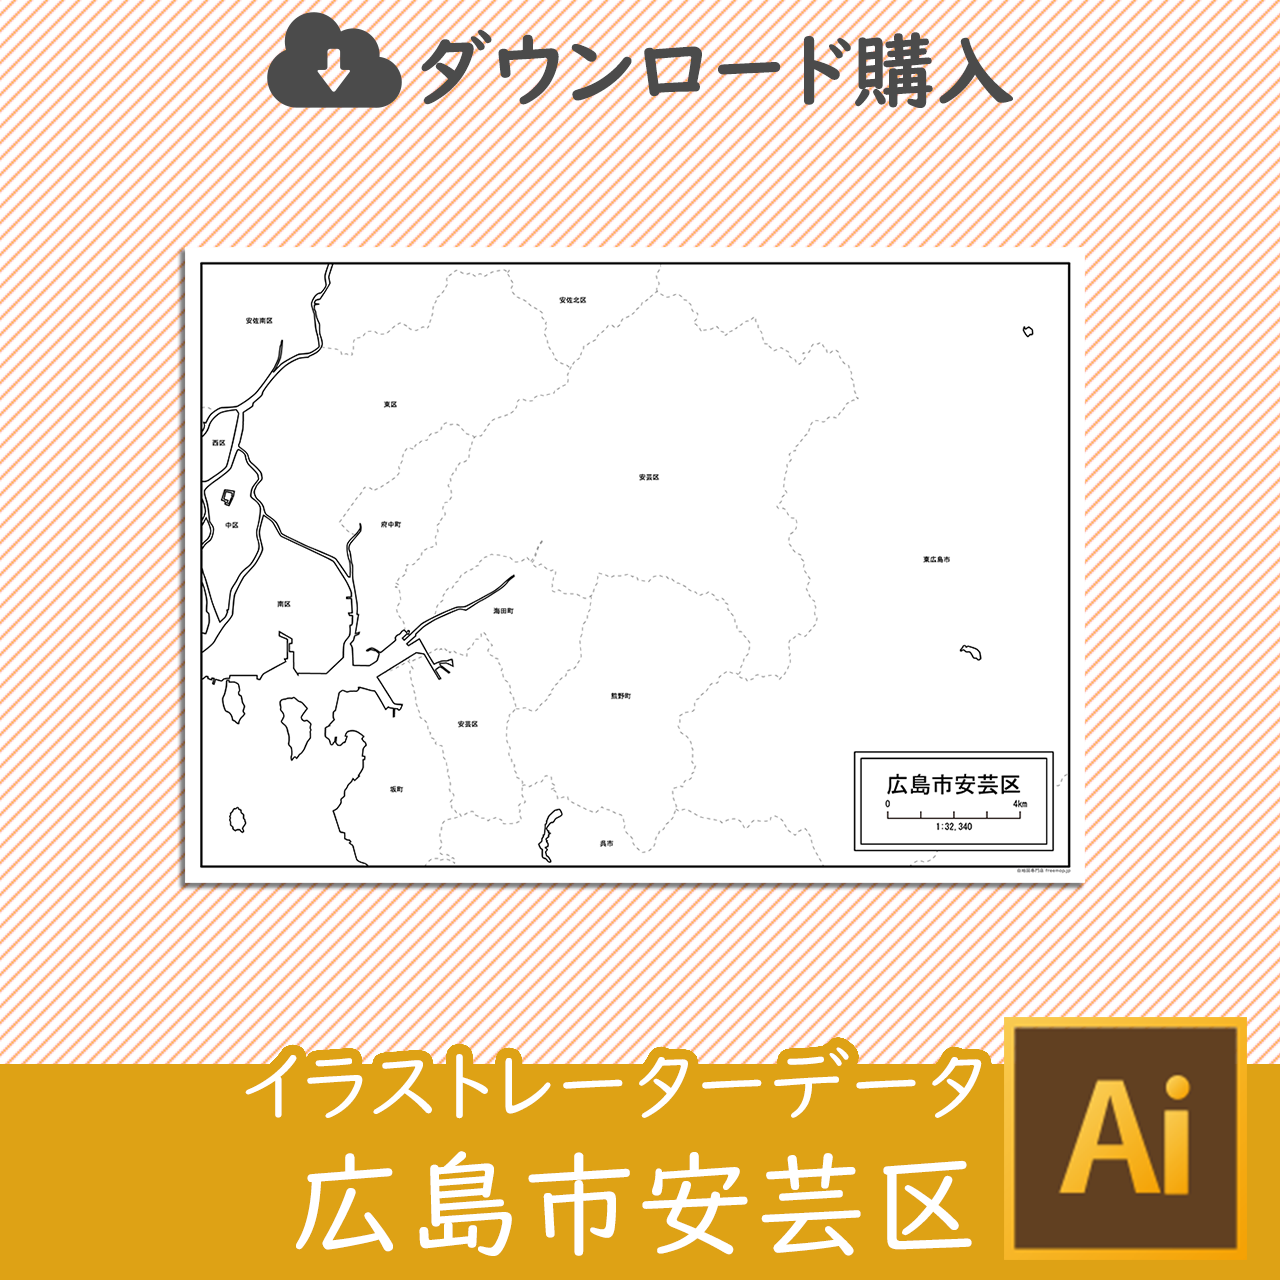 広島市安芸区のaiデータのサムネイル画像